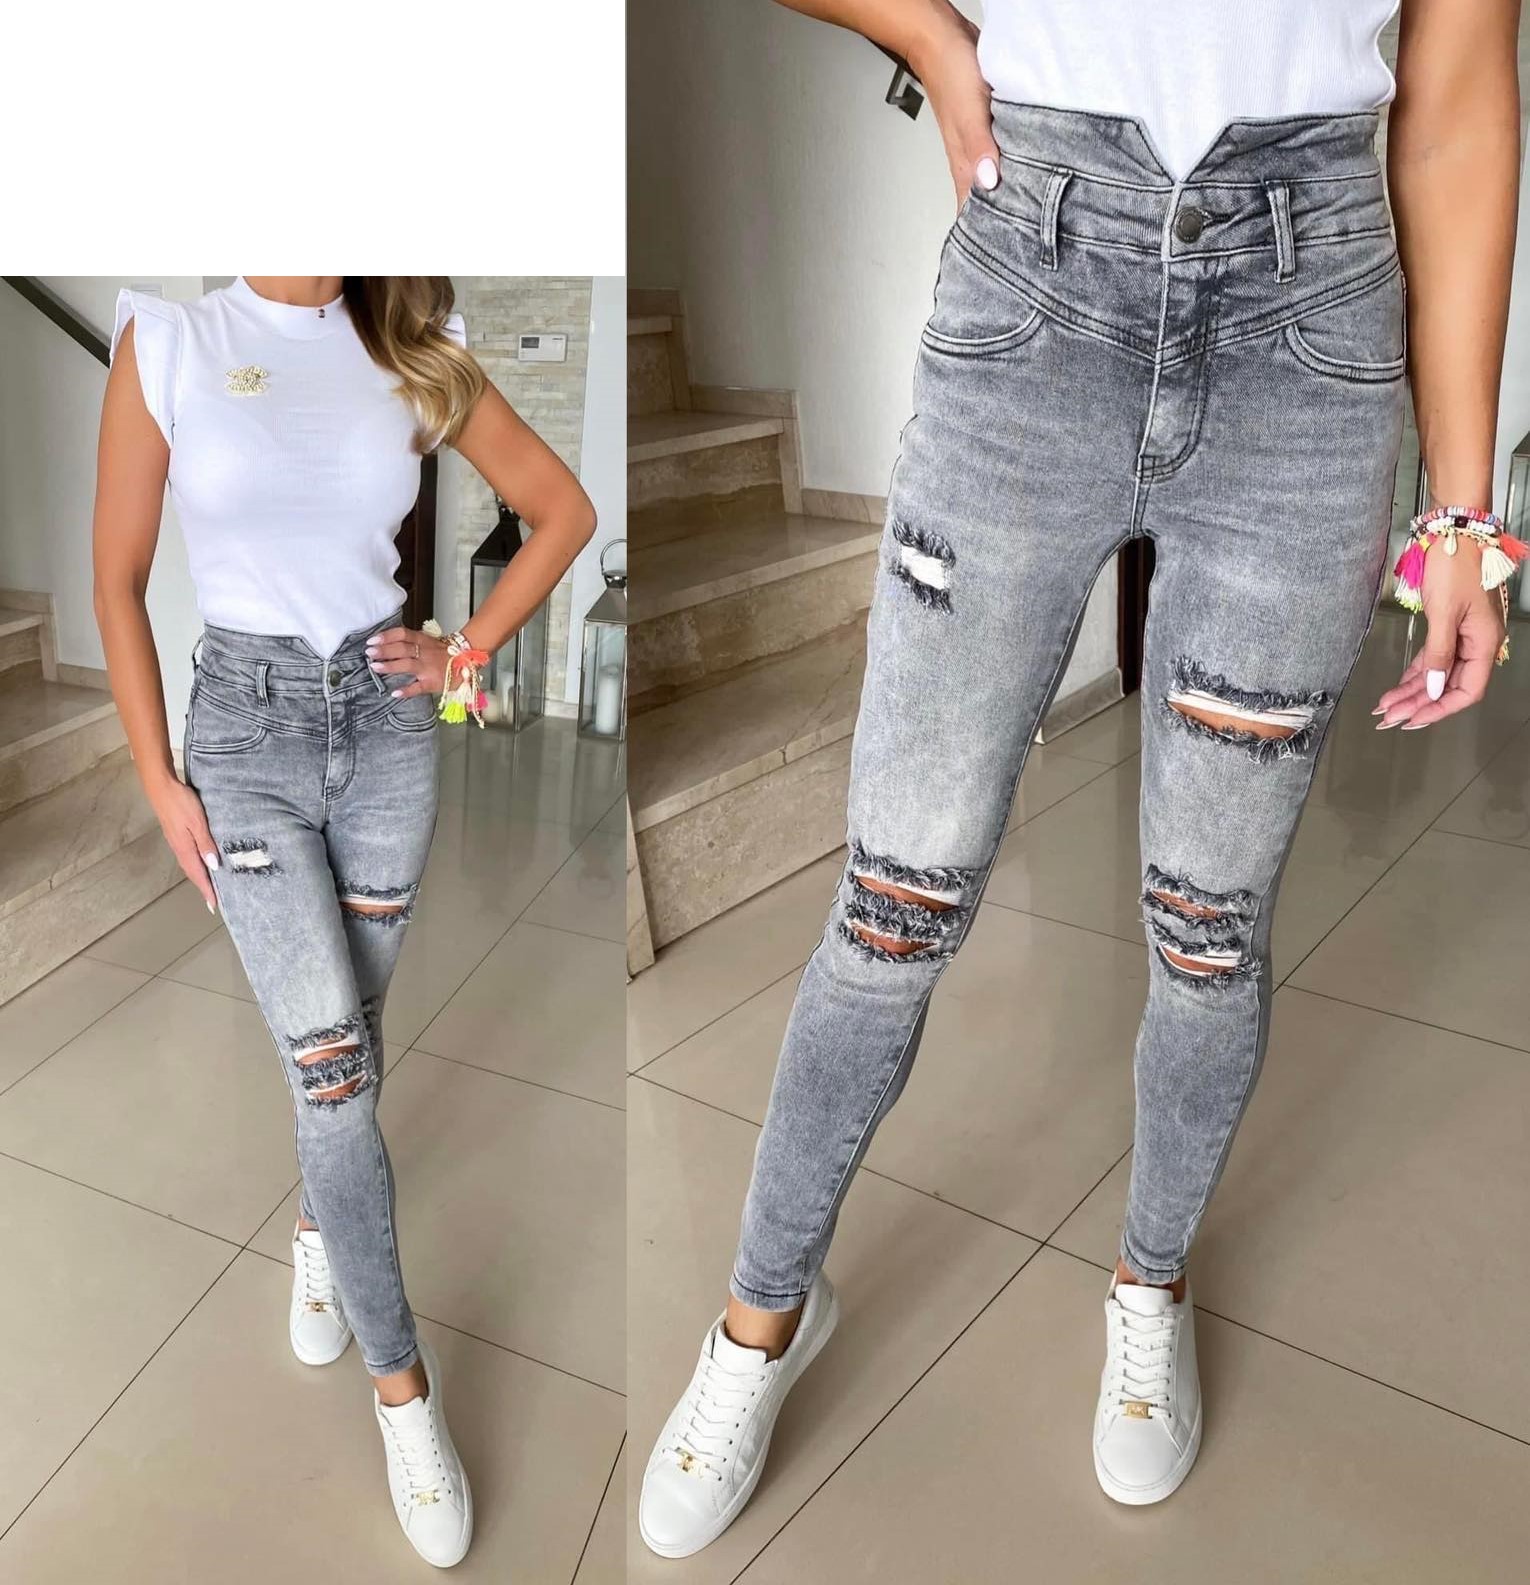 Spodnie damskie jeans Roz  34-42 .  1 kolor . Paczka 10szt